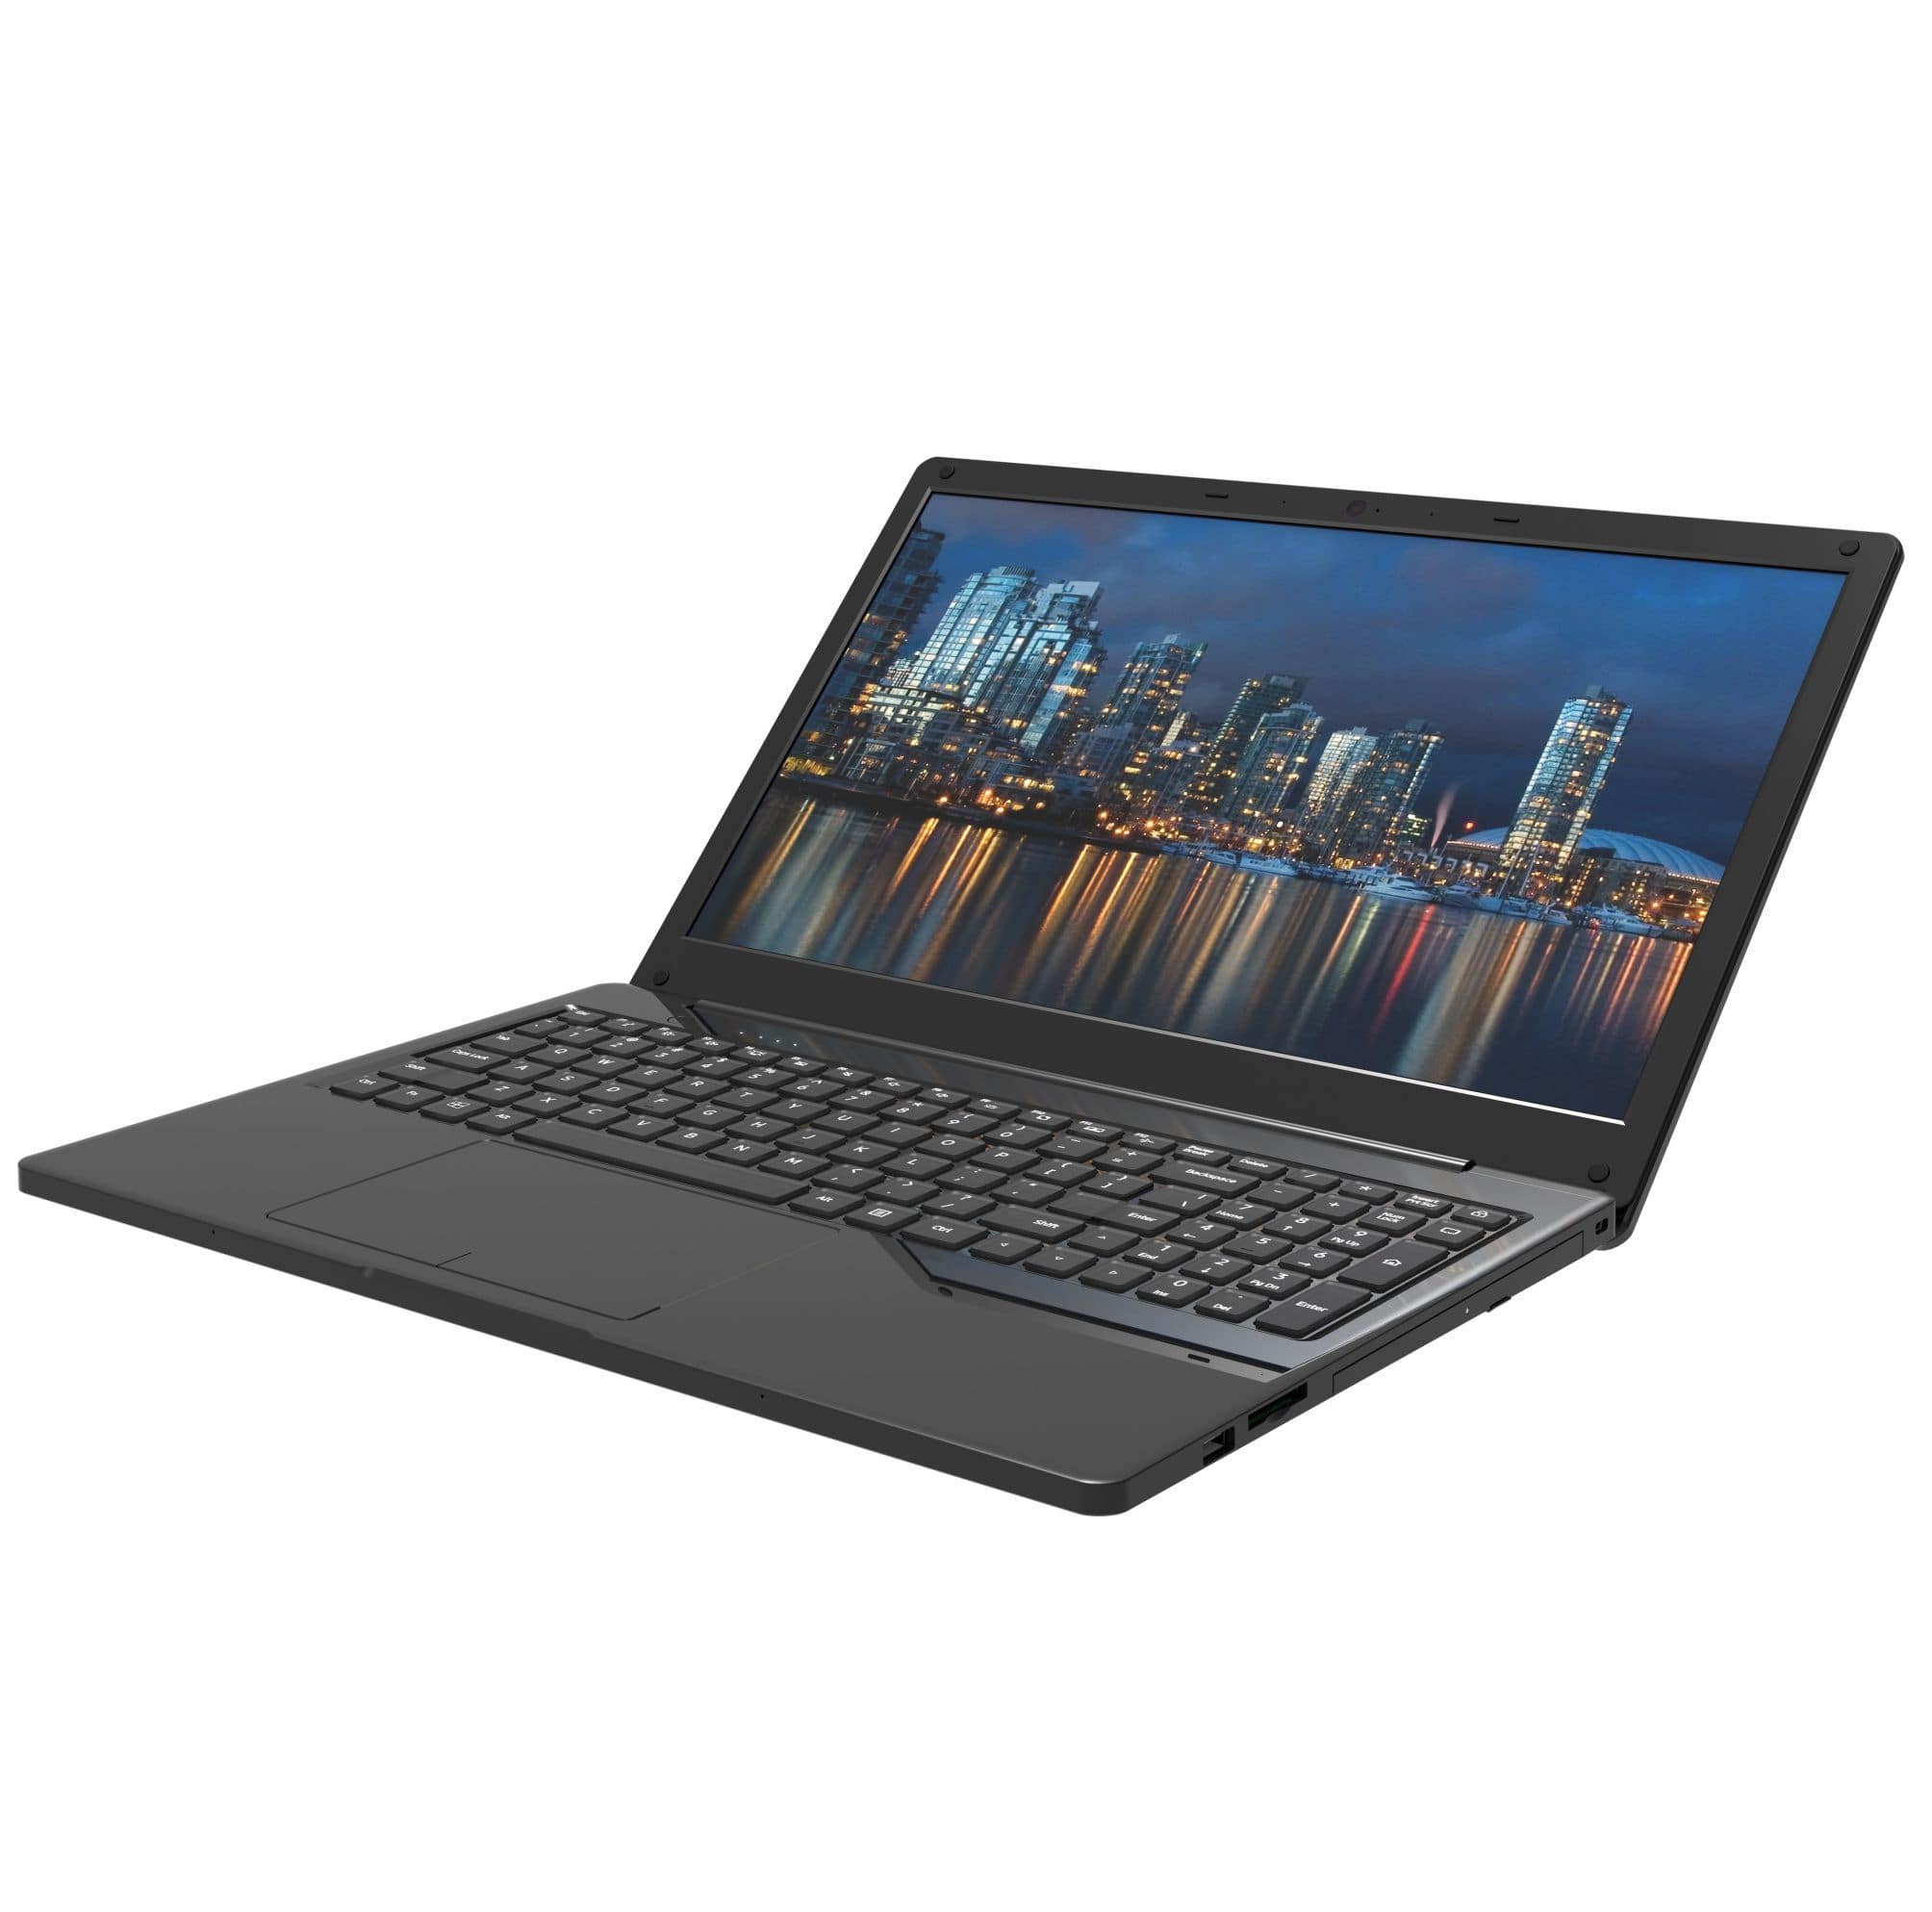 NB1508 15.6 inch Laptop FHD i5-8259U 8GB RAM 256GB SSD Window 10